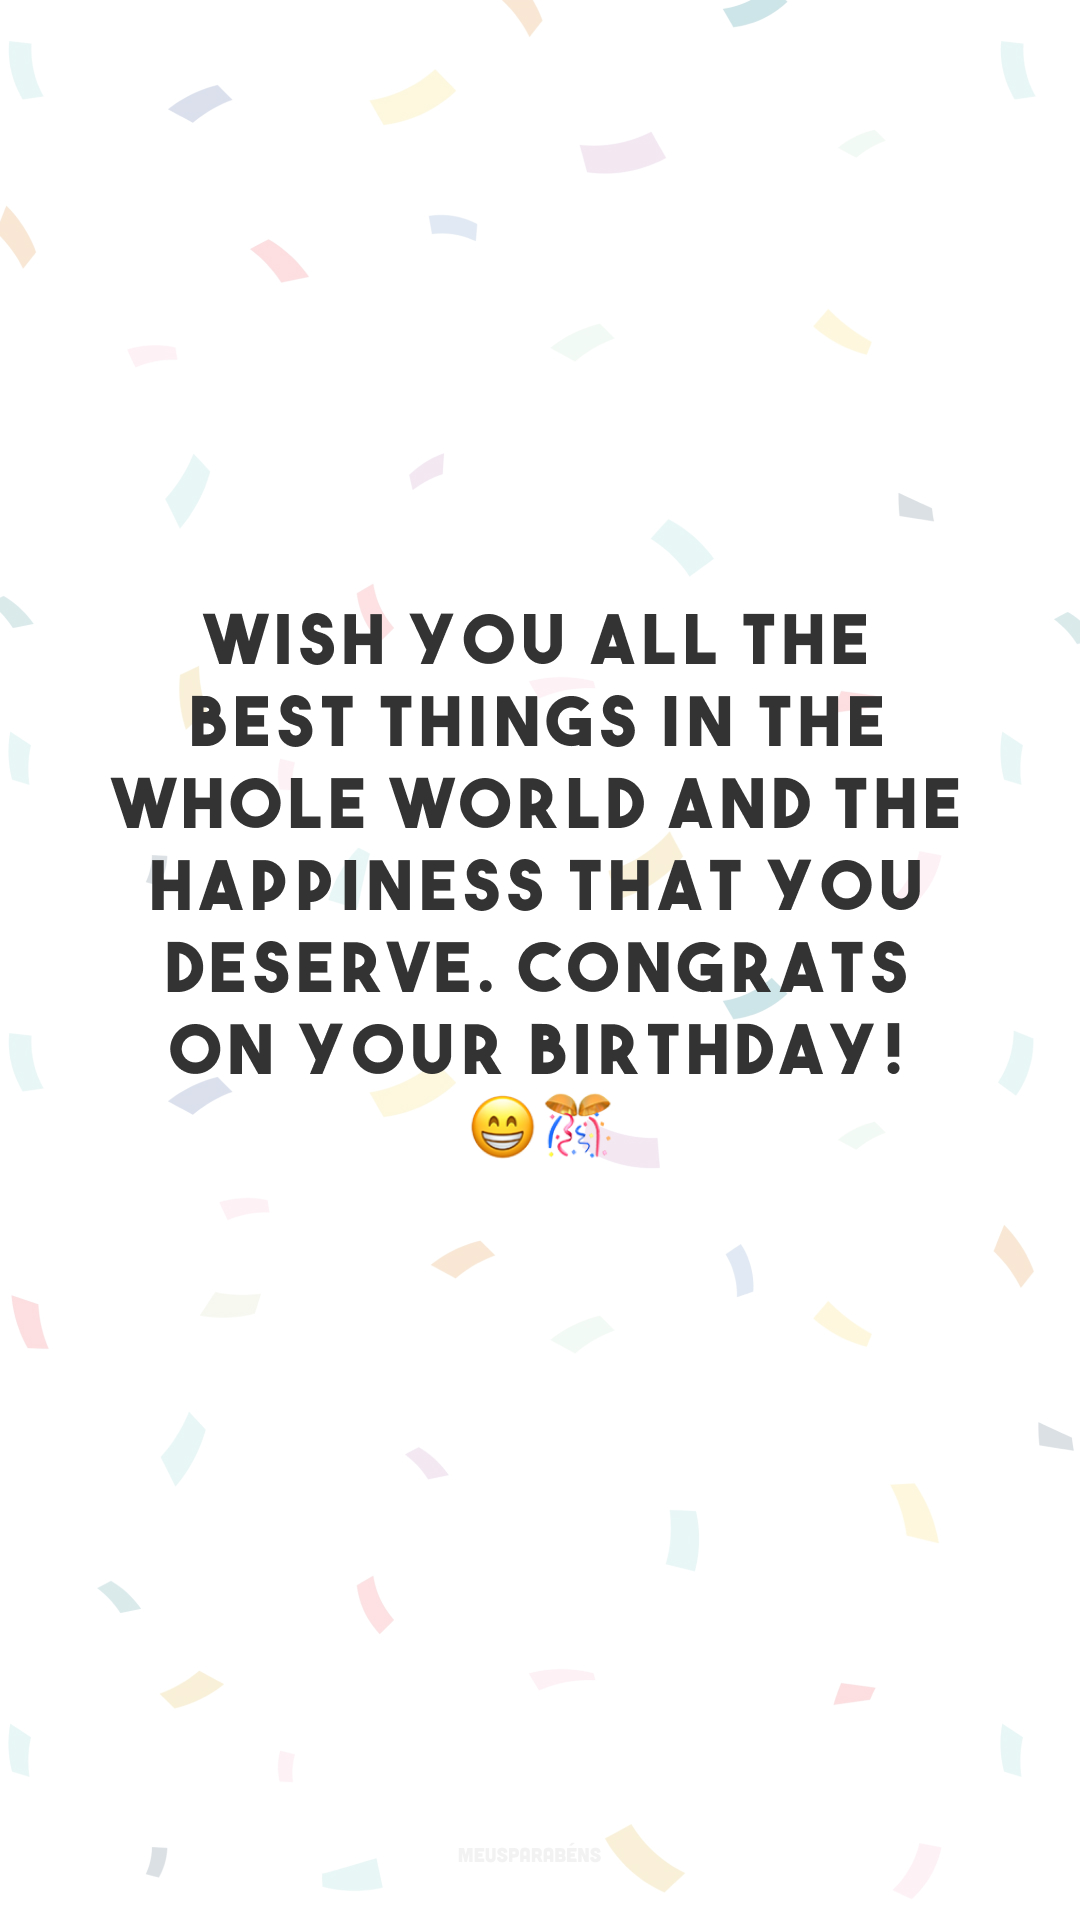 Wish you all the best things in the whole world and the happiness that you deserve. Congrats on your birthday! 😁🎊
(Desejo a você as melhores coisas do mundo e a felicidade que você merece. Parabéns pelo seu aniversário!)